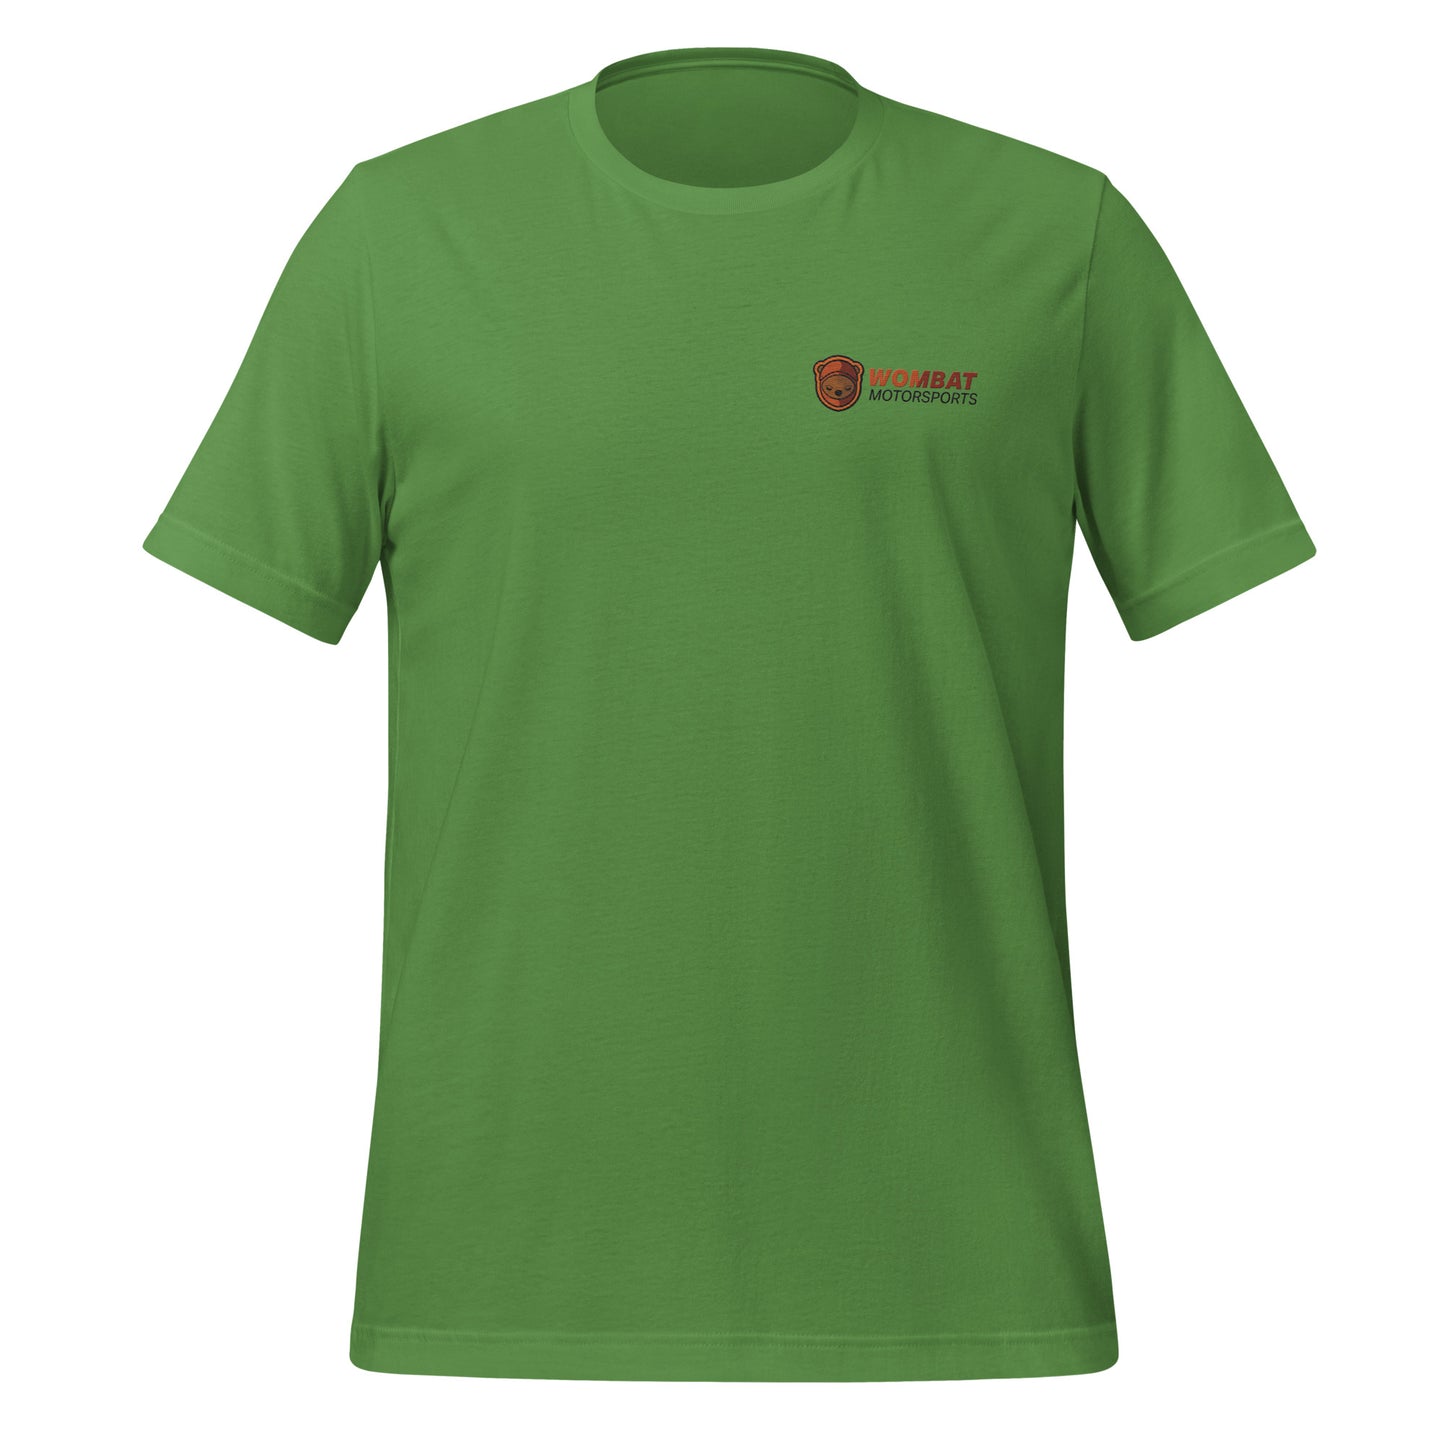 Wombat Motorsports t-shirt